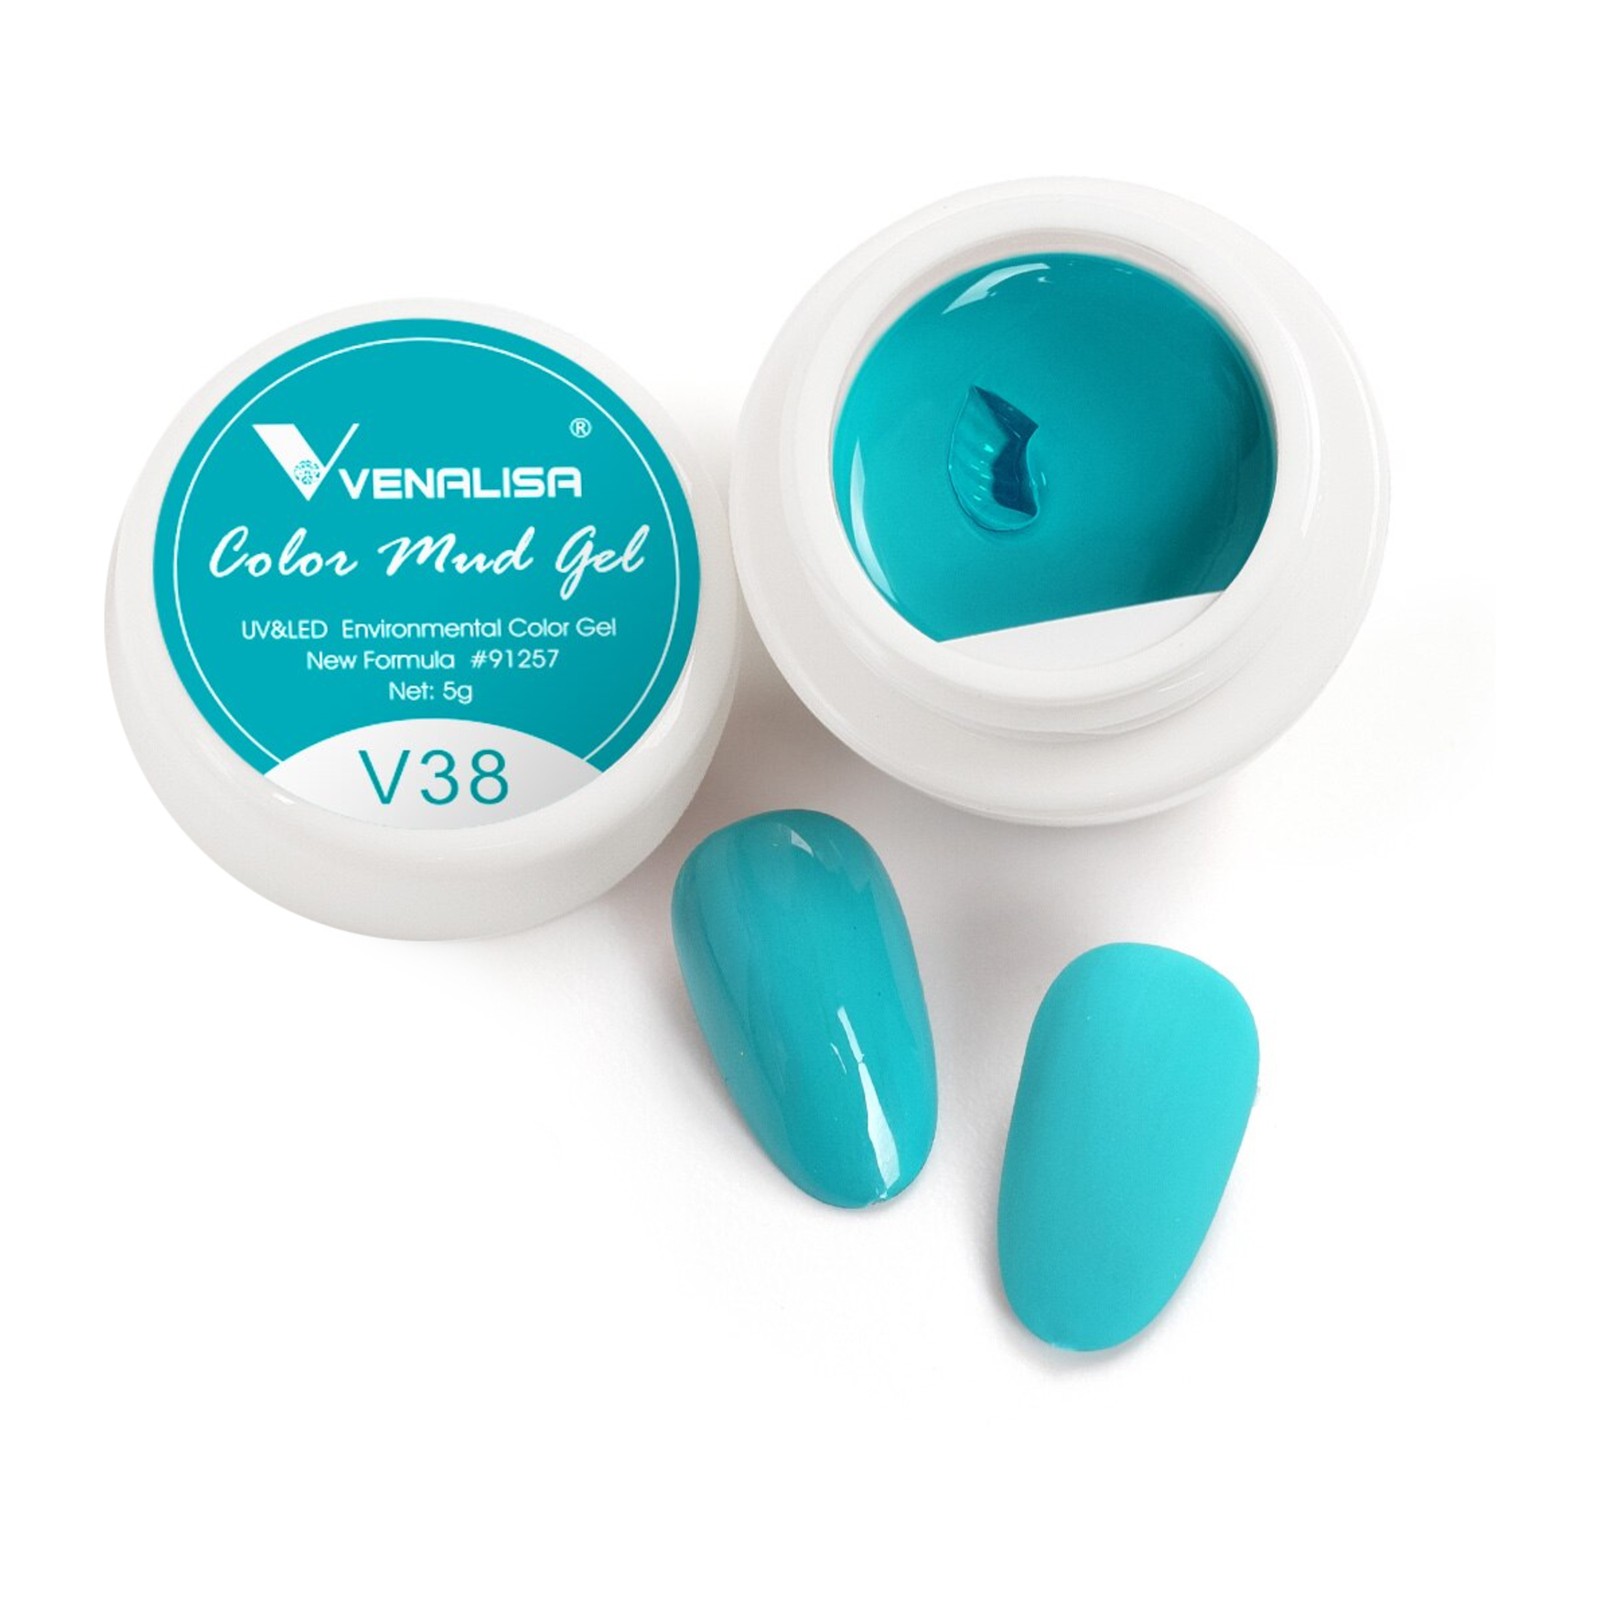 Βεναλίσα -  V38 -  5 ml